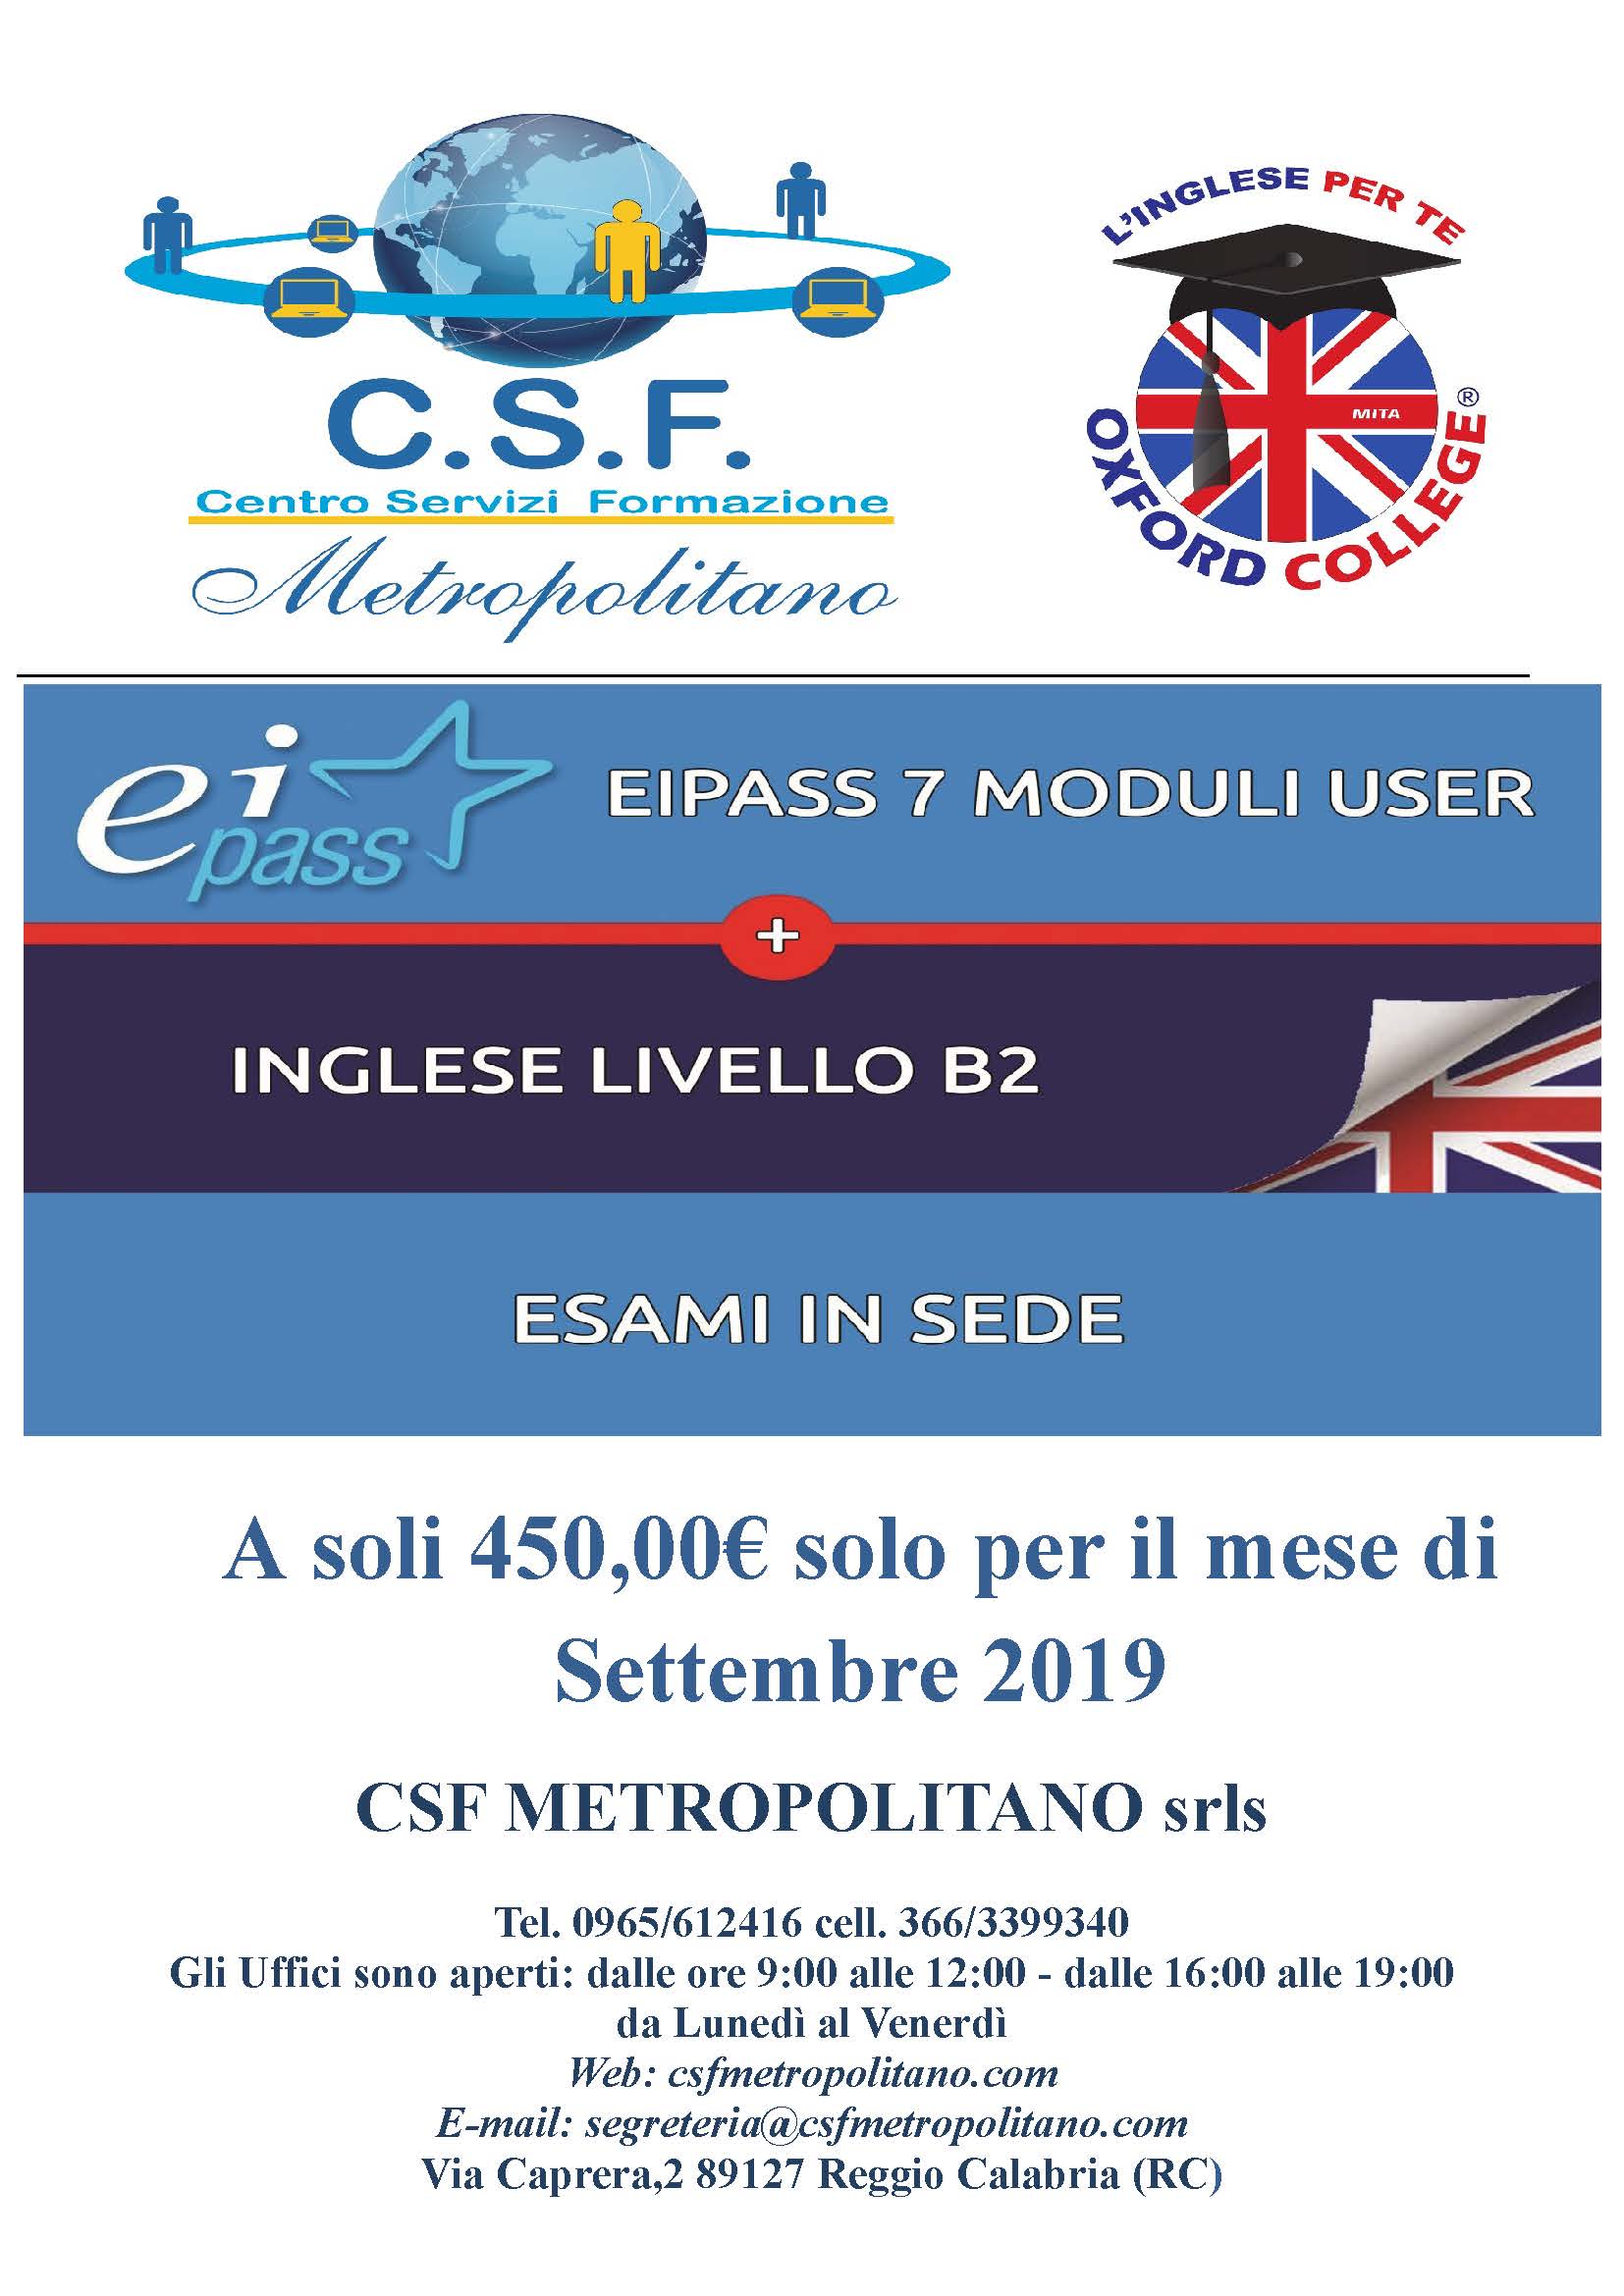 CSF Metropolitano